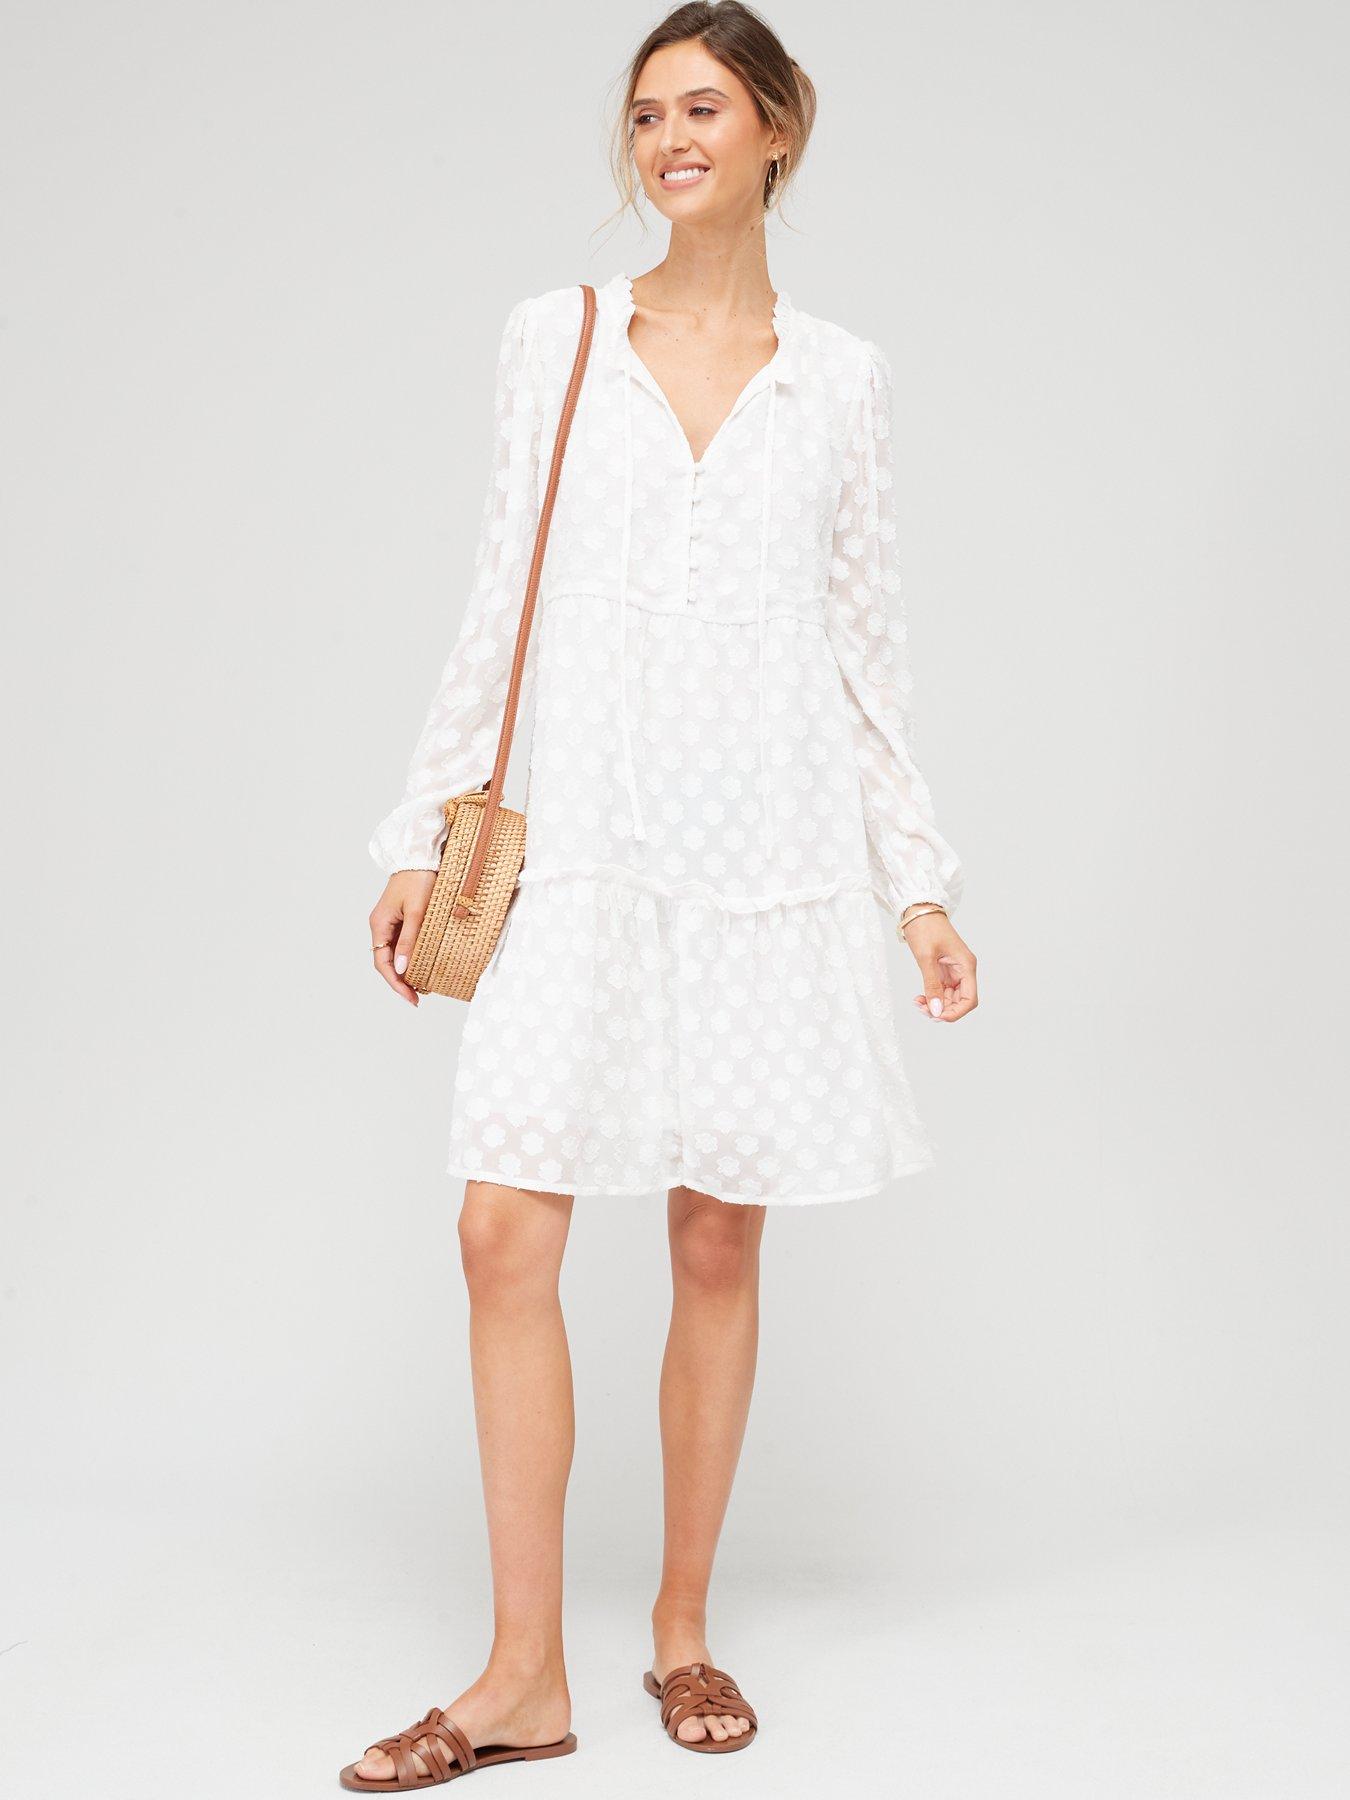 The White Jacquard Sling Mini Dress